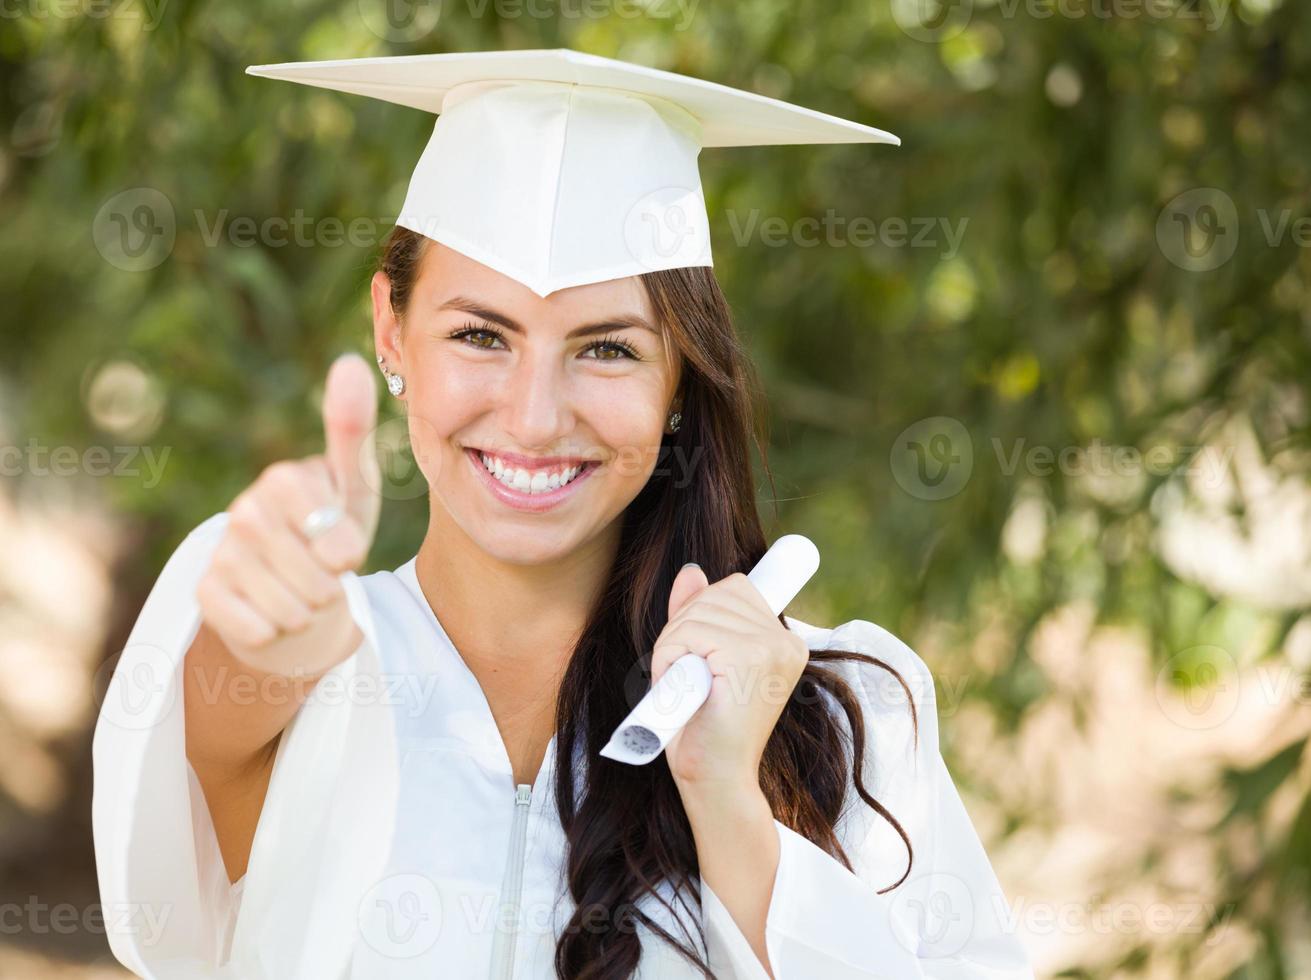 gemengd ras duimen omhoog meisje vieren diploma uitreiking buiten in pet en japon met diploma in hand- foto